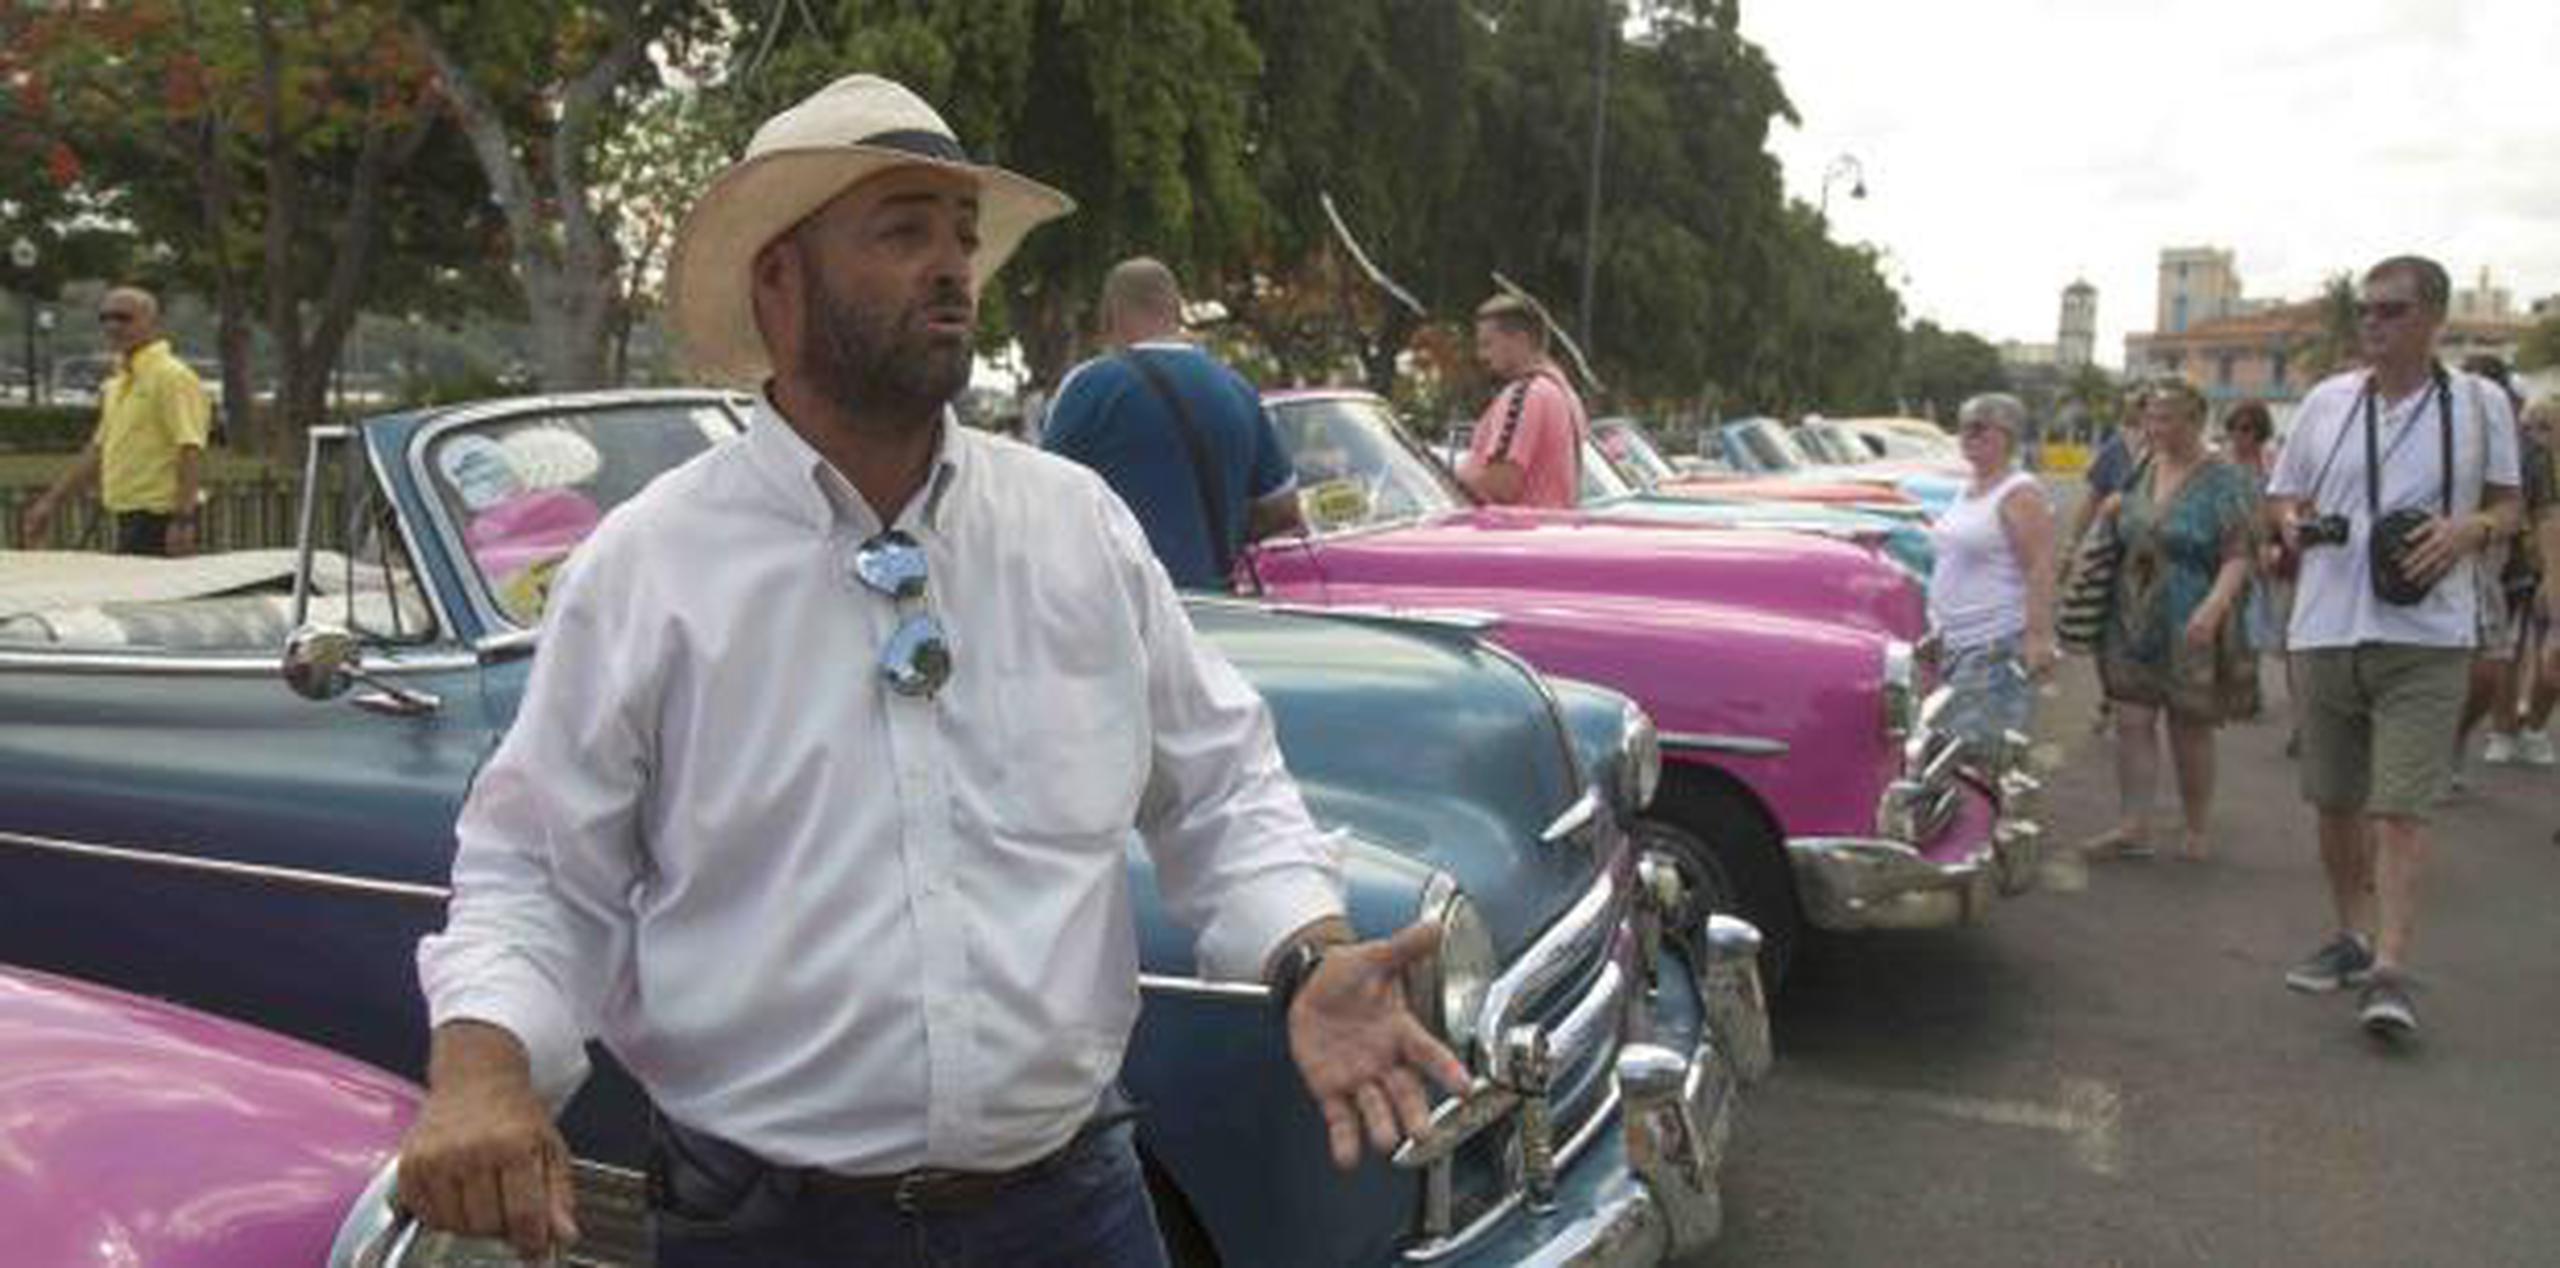 Yosbell Figueroa, quien es conductor de autos clásico, esperaba clientes en La Habana ayer, miércoles. (AP / Ismael Francisco)